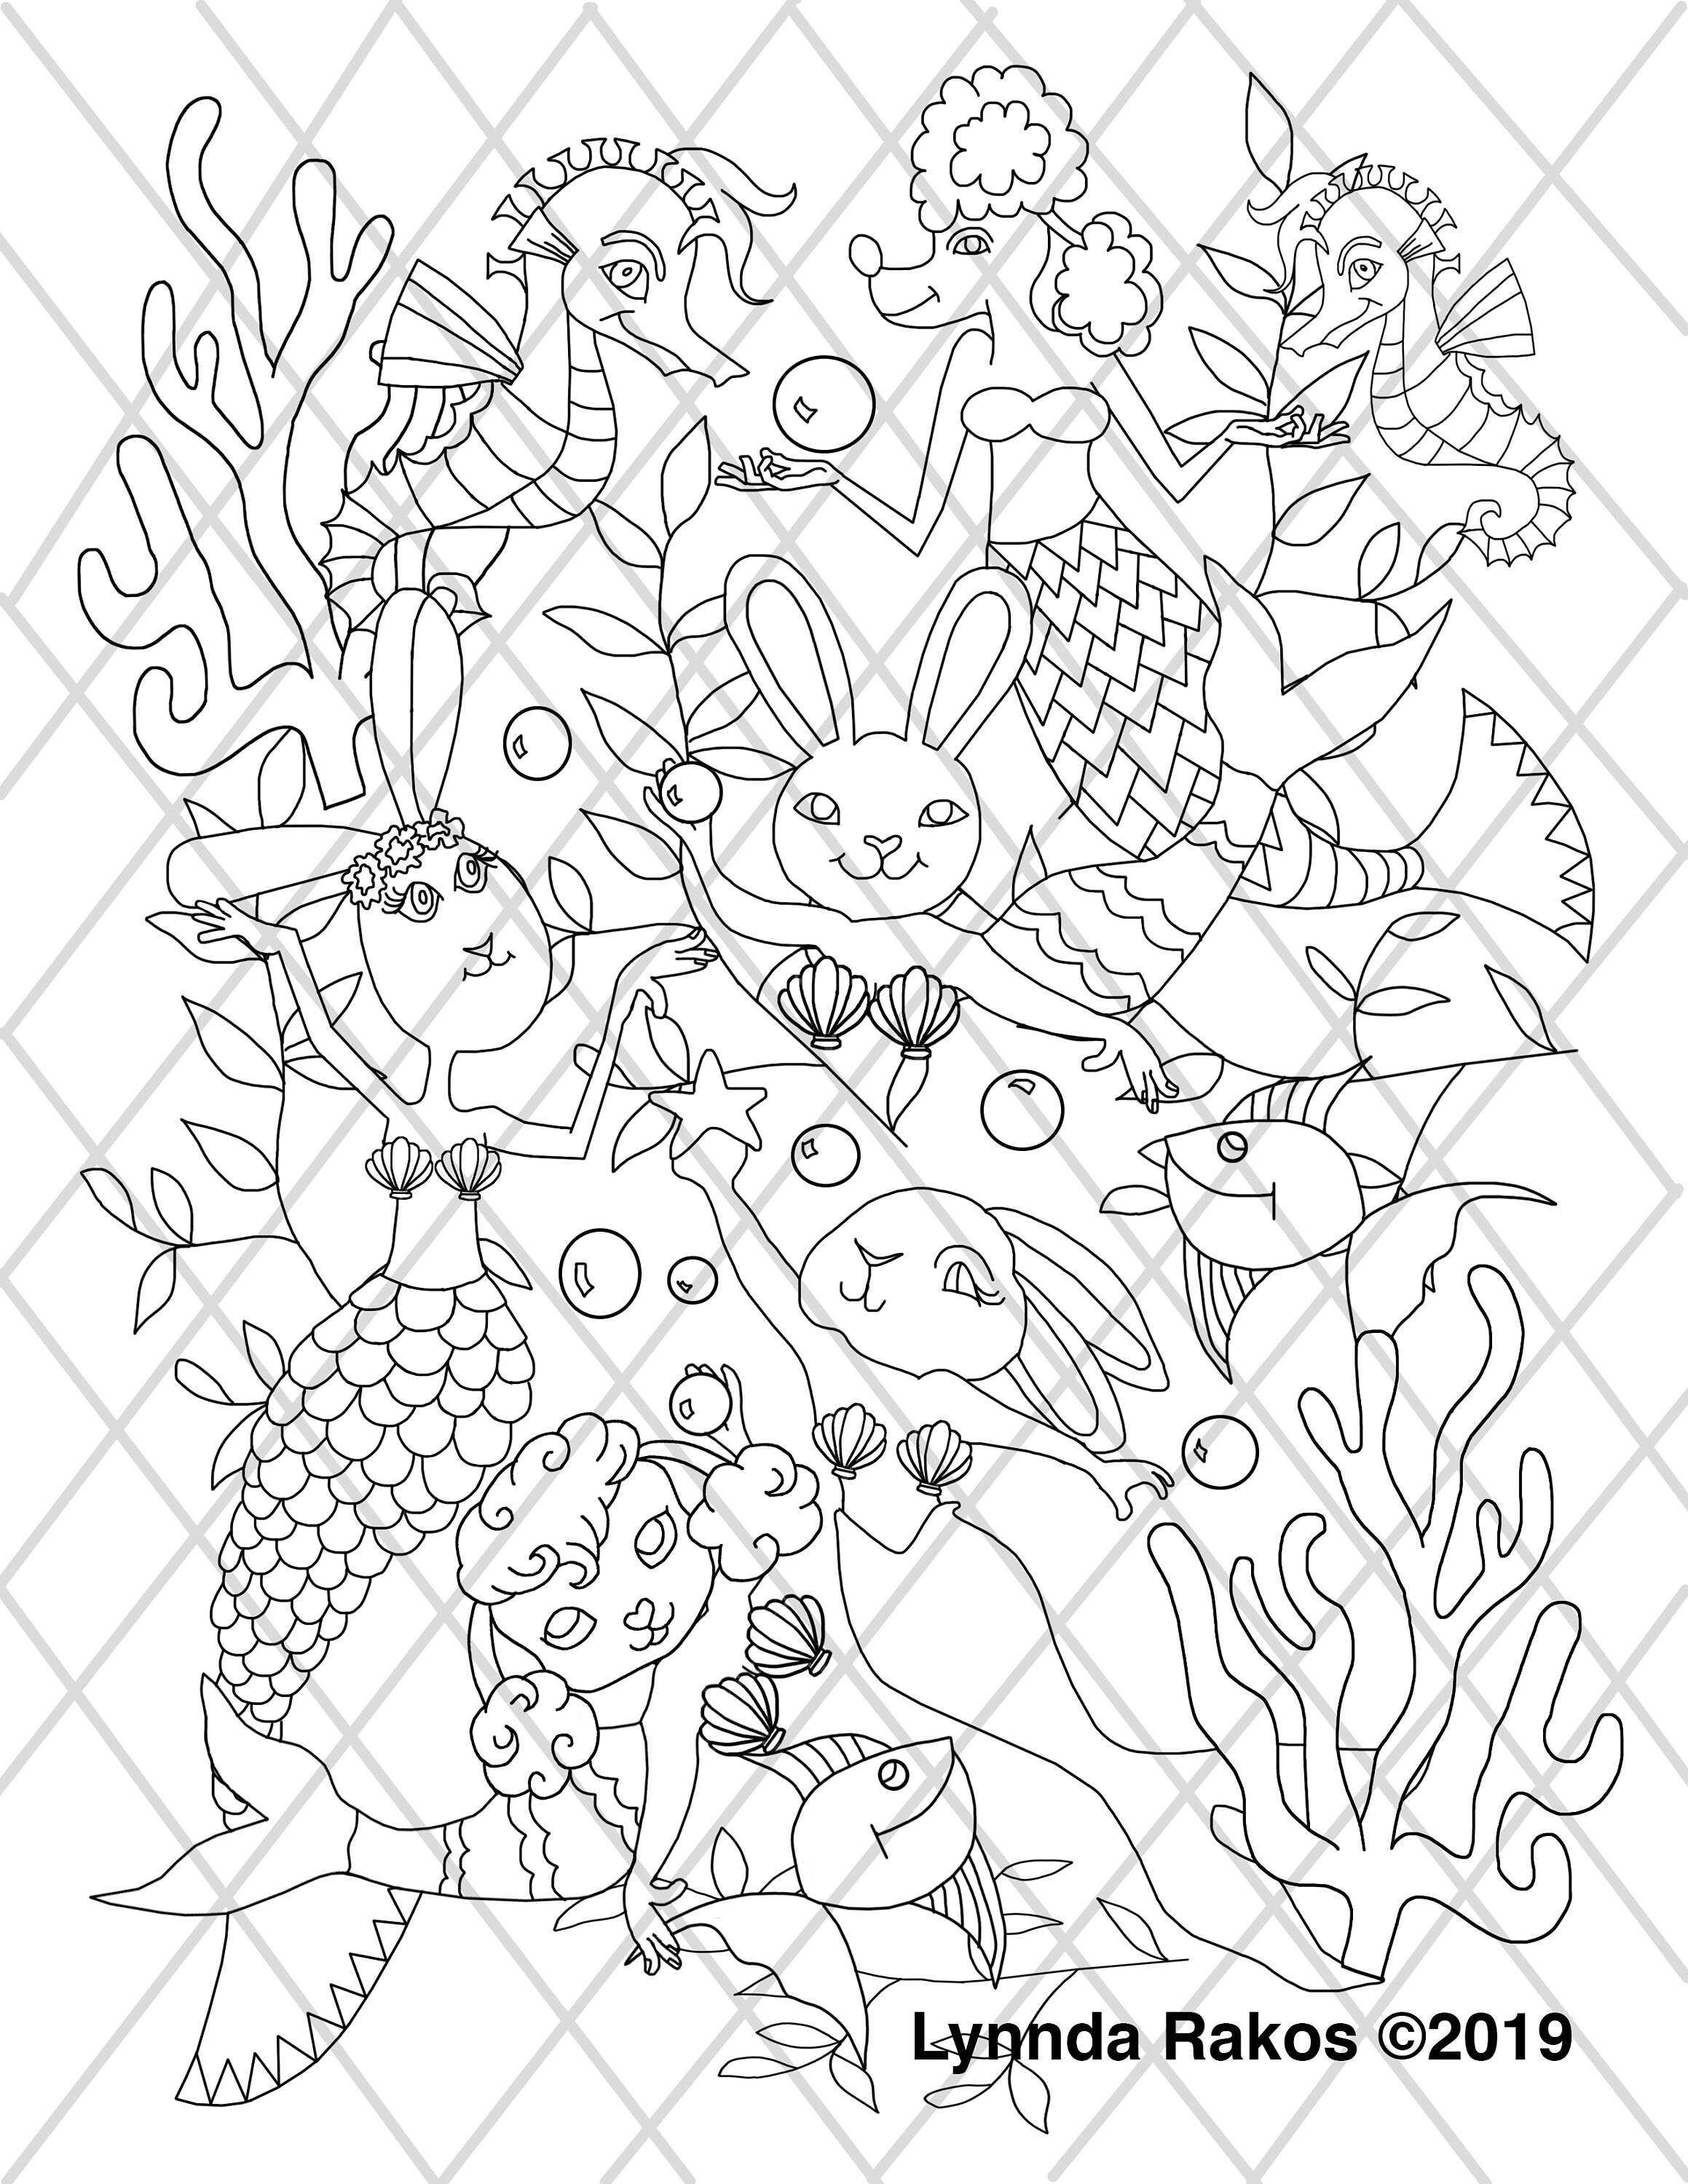 mermaid bunny printable coloringcoloring page DIY | Etsy